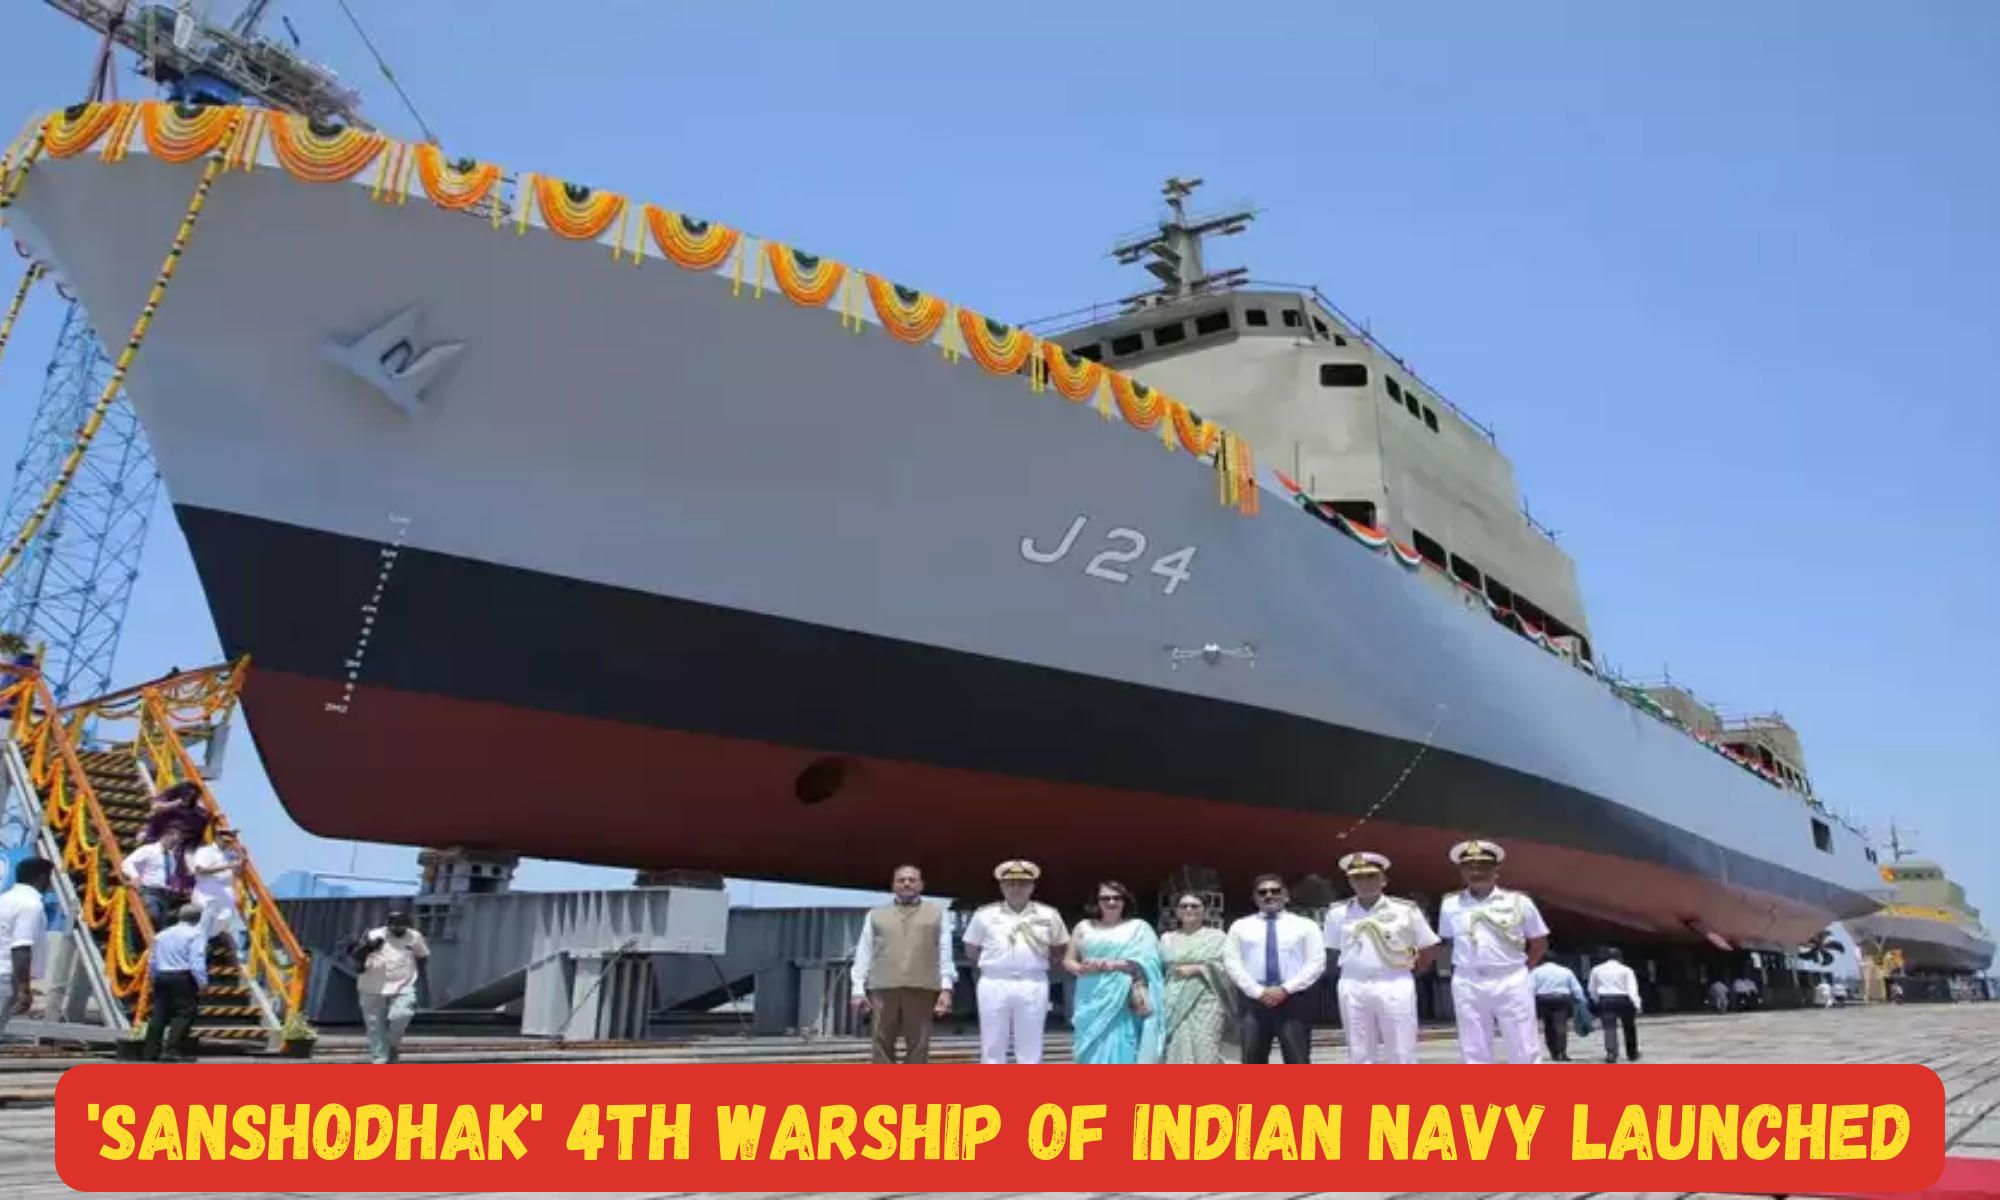 'Sanshodhak' 4th warship of Indian Navy launched